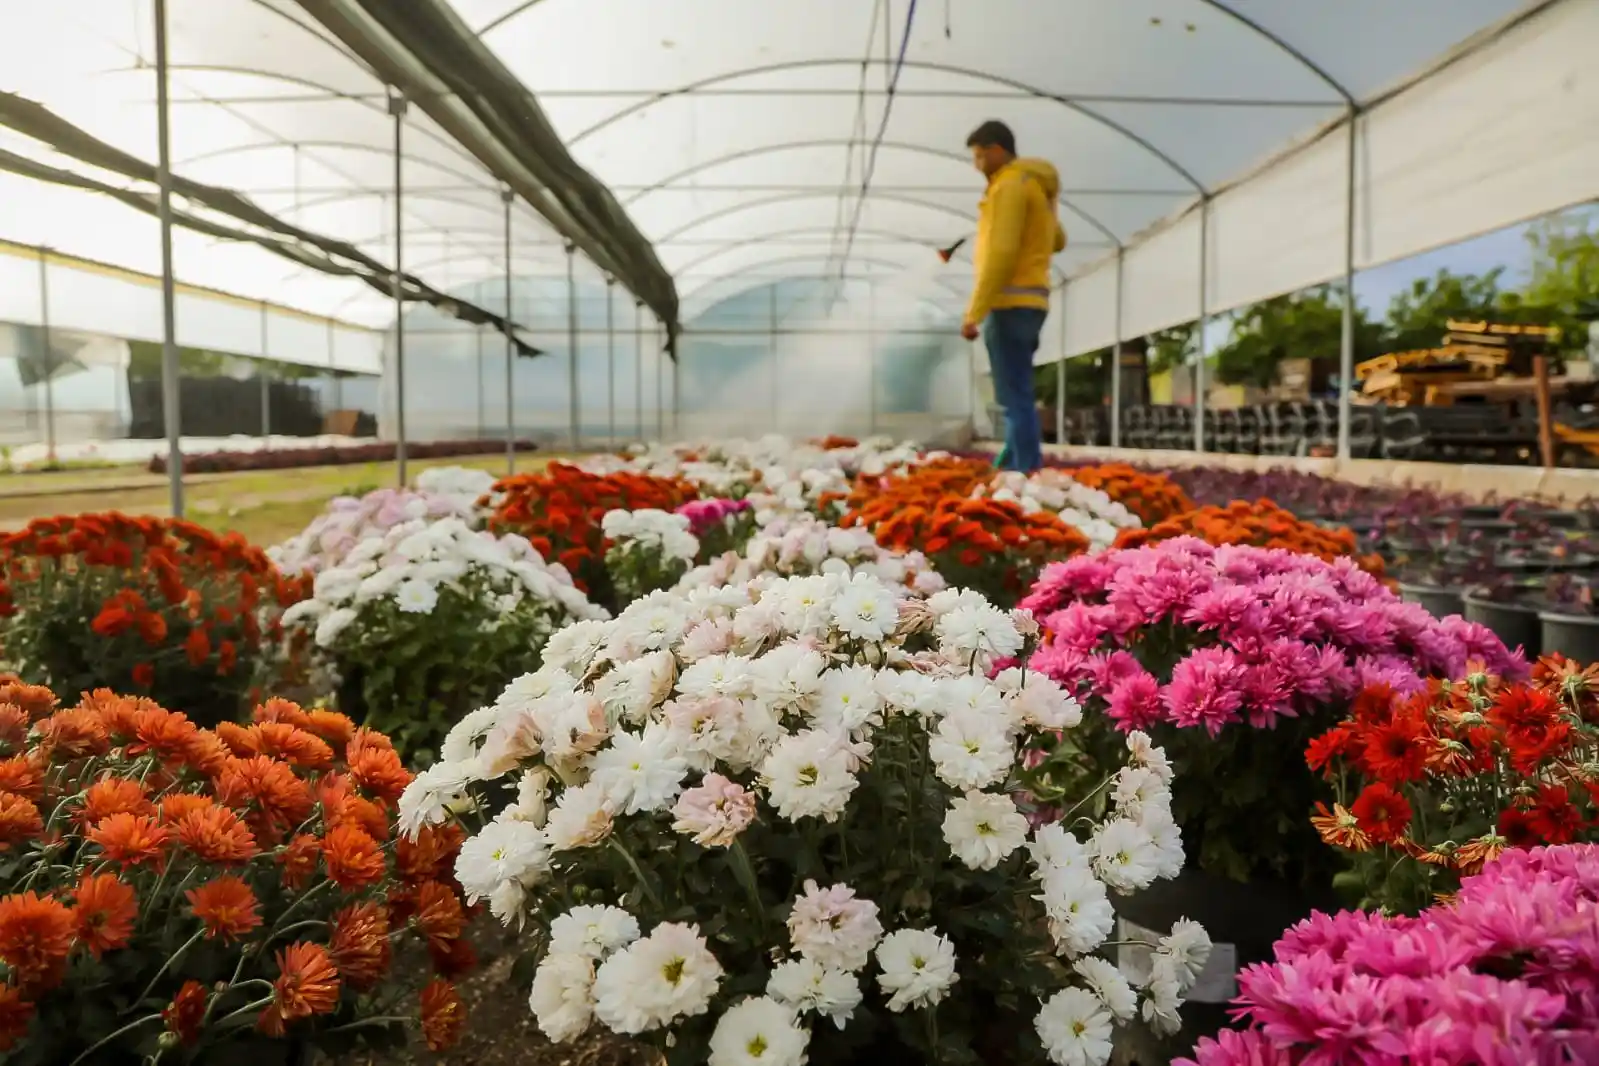 Büyükşehir Belediyesi Aydın'ı renklendiren çiçekleri kendi üretiyor
